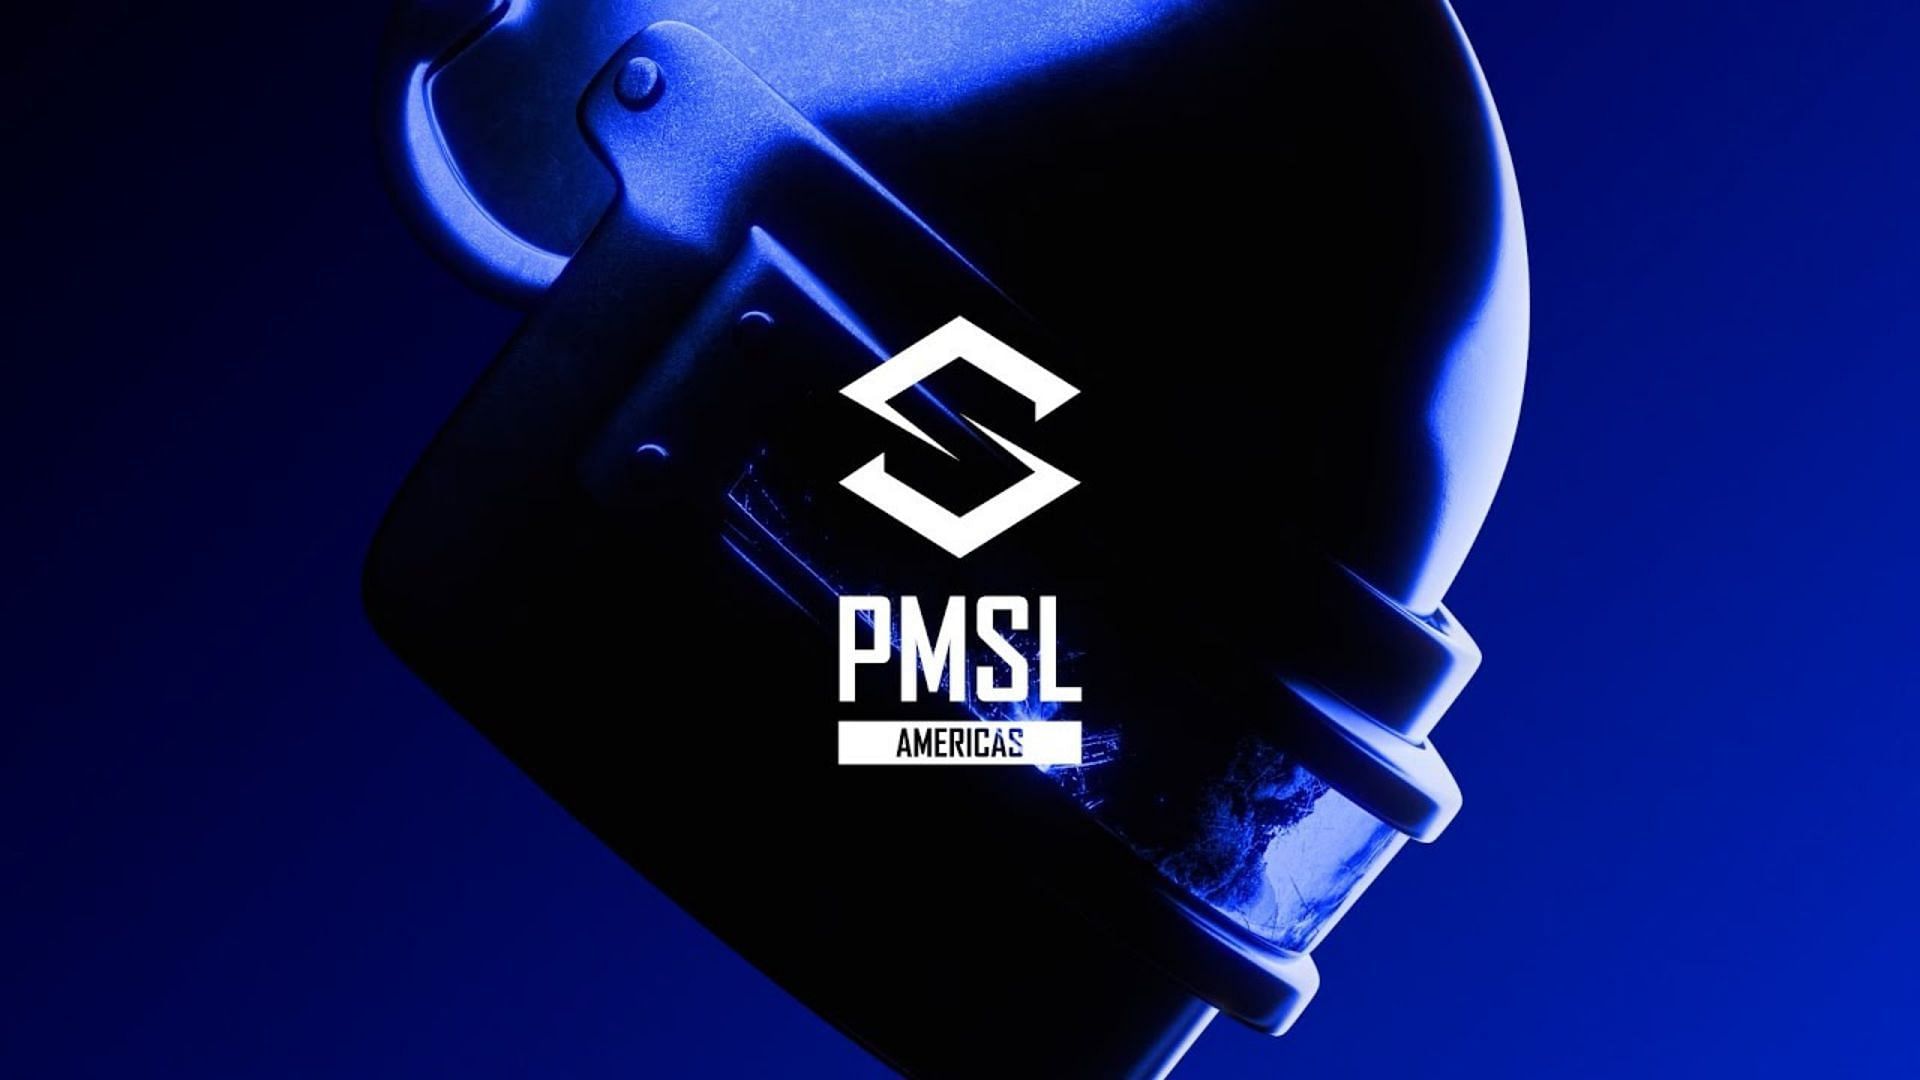 PMSL Americas begins on May 29 (Image via PUBG Mobile)